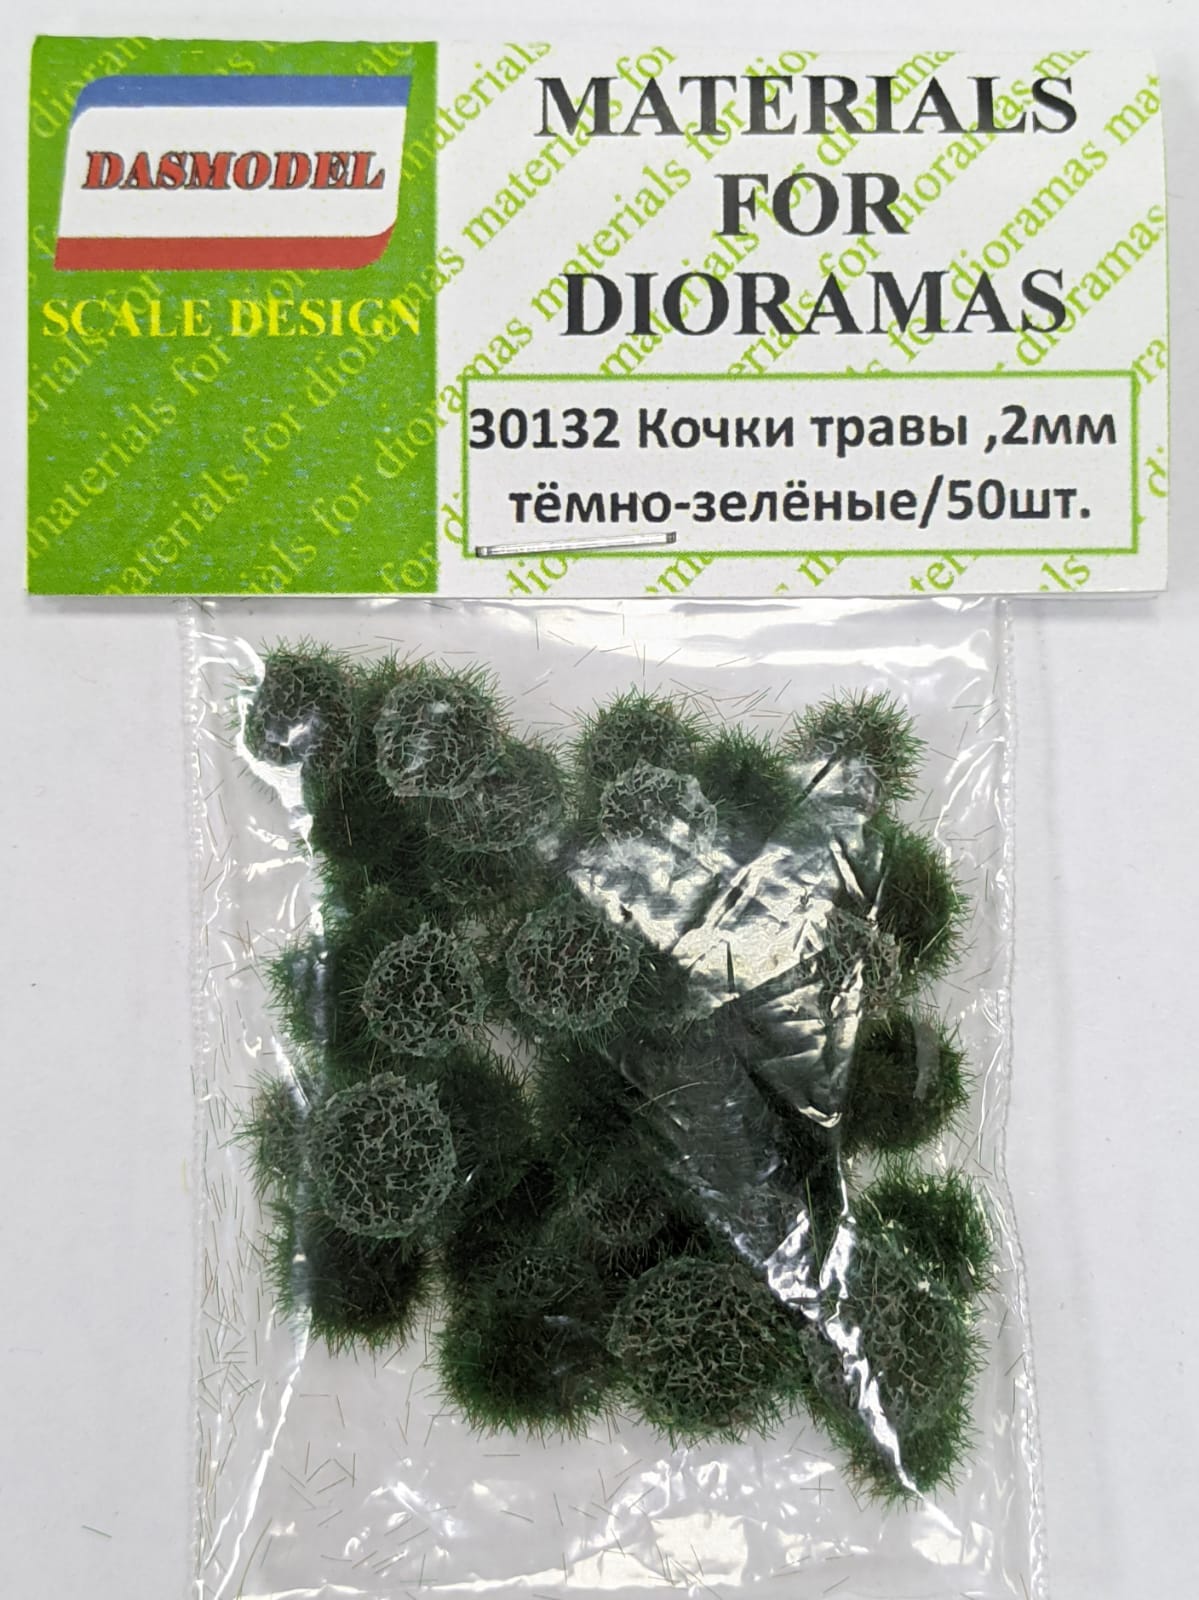 30132  материалы для диорам  Кочки травы, тёмно-зелёные, 2мм / 50шт